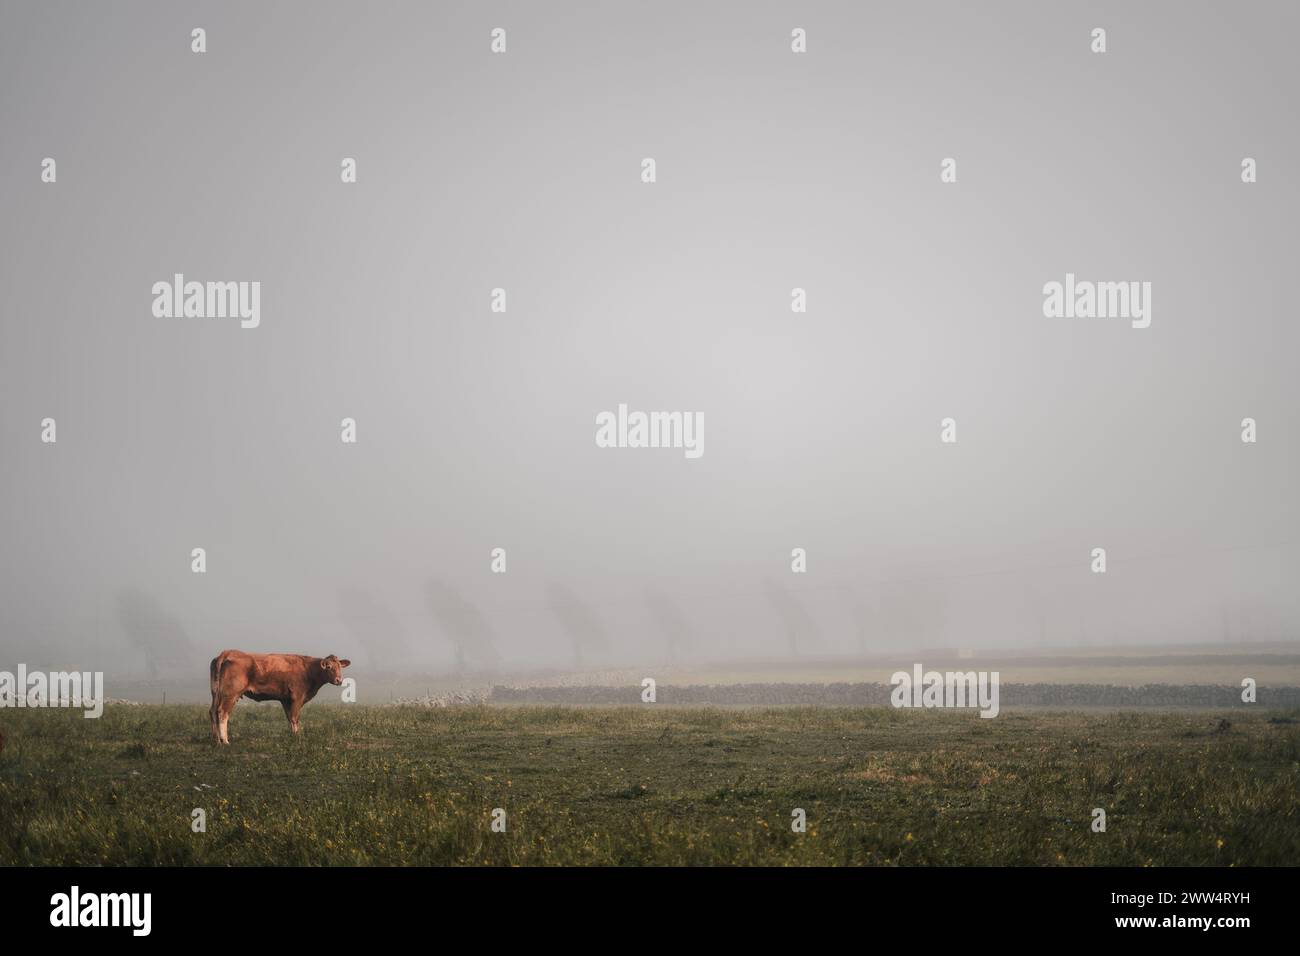 Una mucca sta in piedi in un campo d'erba in una giornata nebbiosa. L'atmosfera è calma e tranquilla, con la mucca che è l'unico essere vivente sulla scena Foto Stock